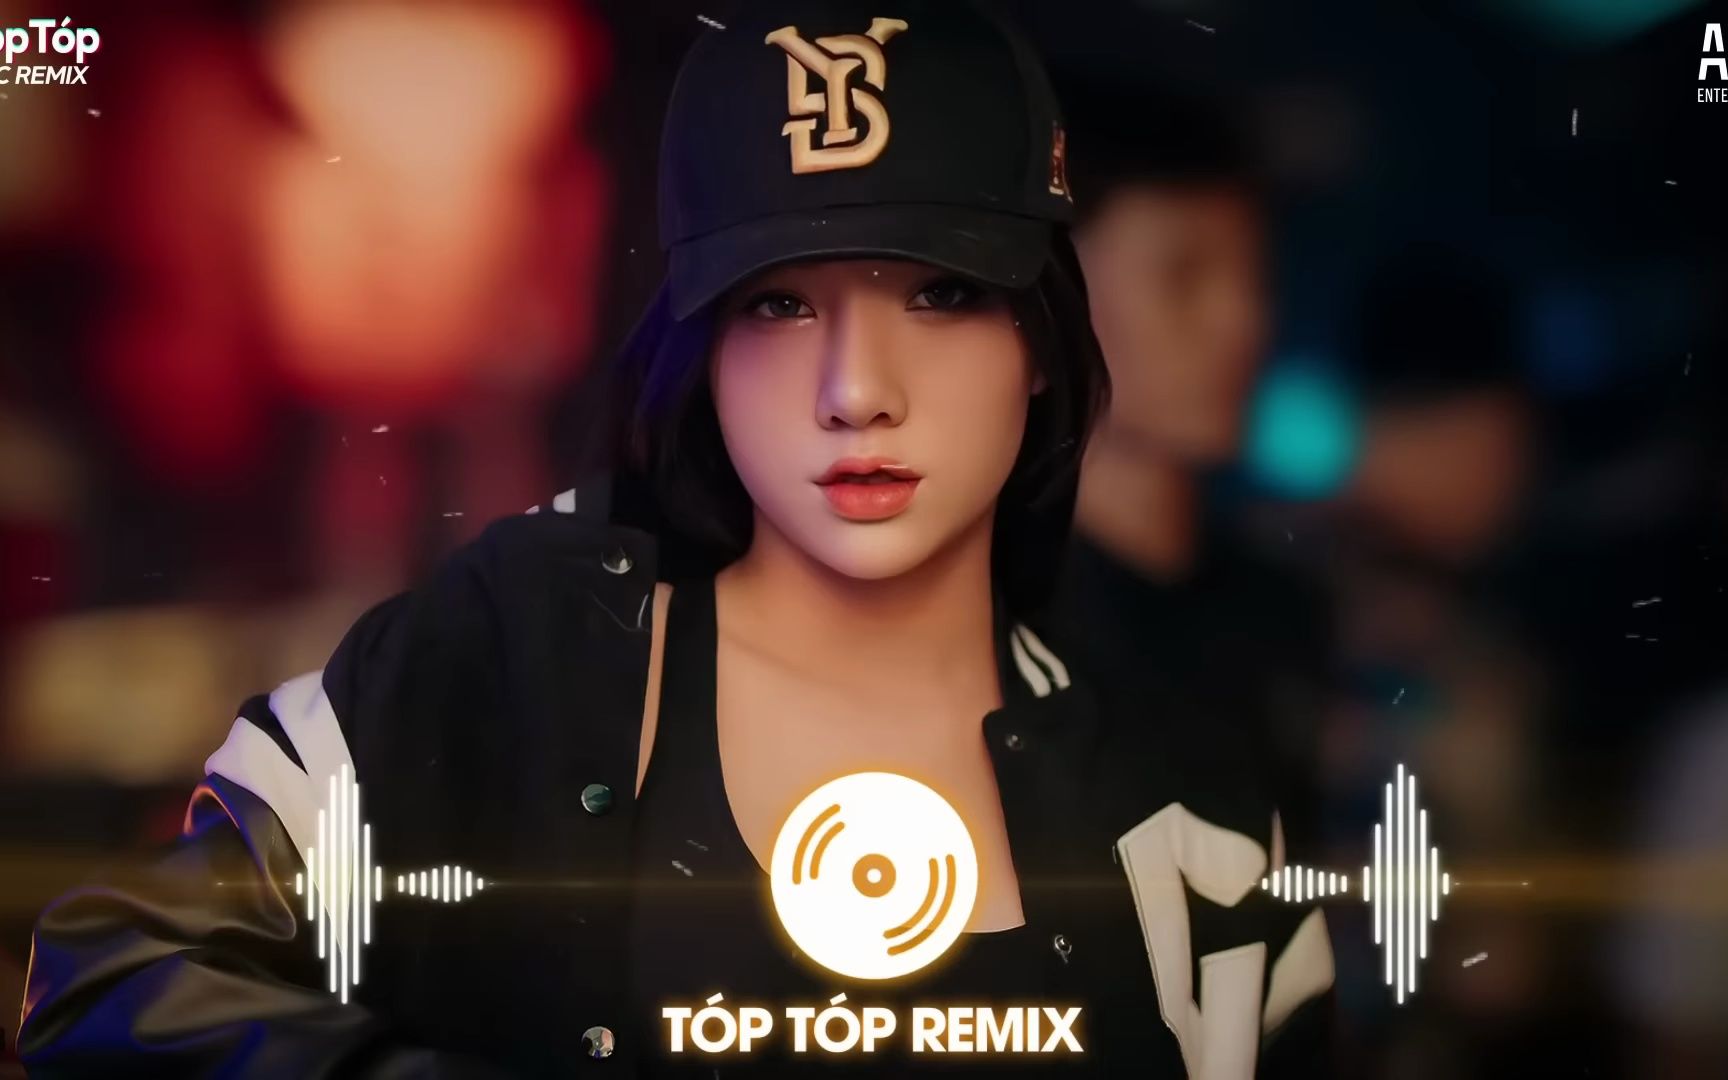 ‎越南鼓 (DJ旋律版) - Single by DJ多多 & 潮妹 on Apple Music